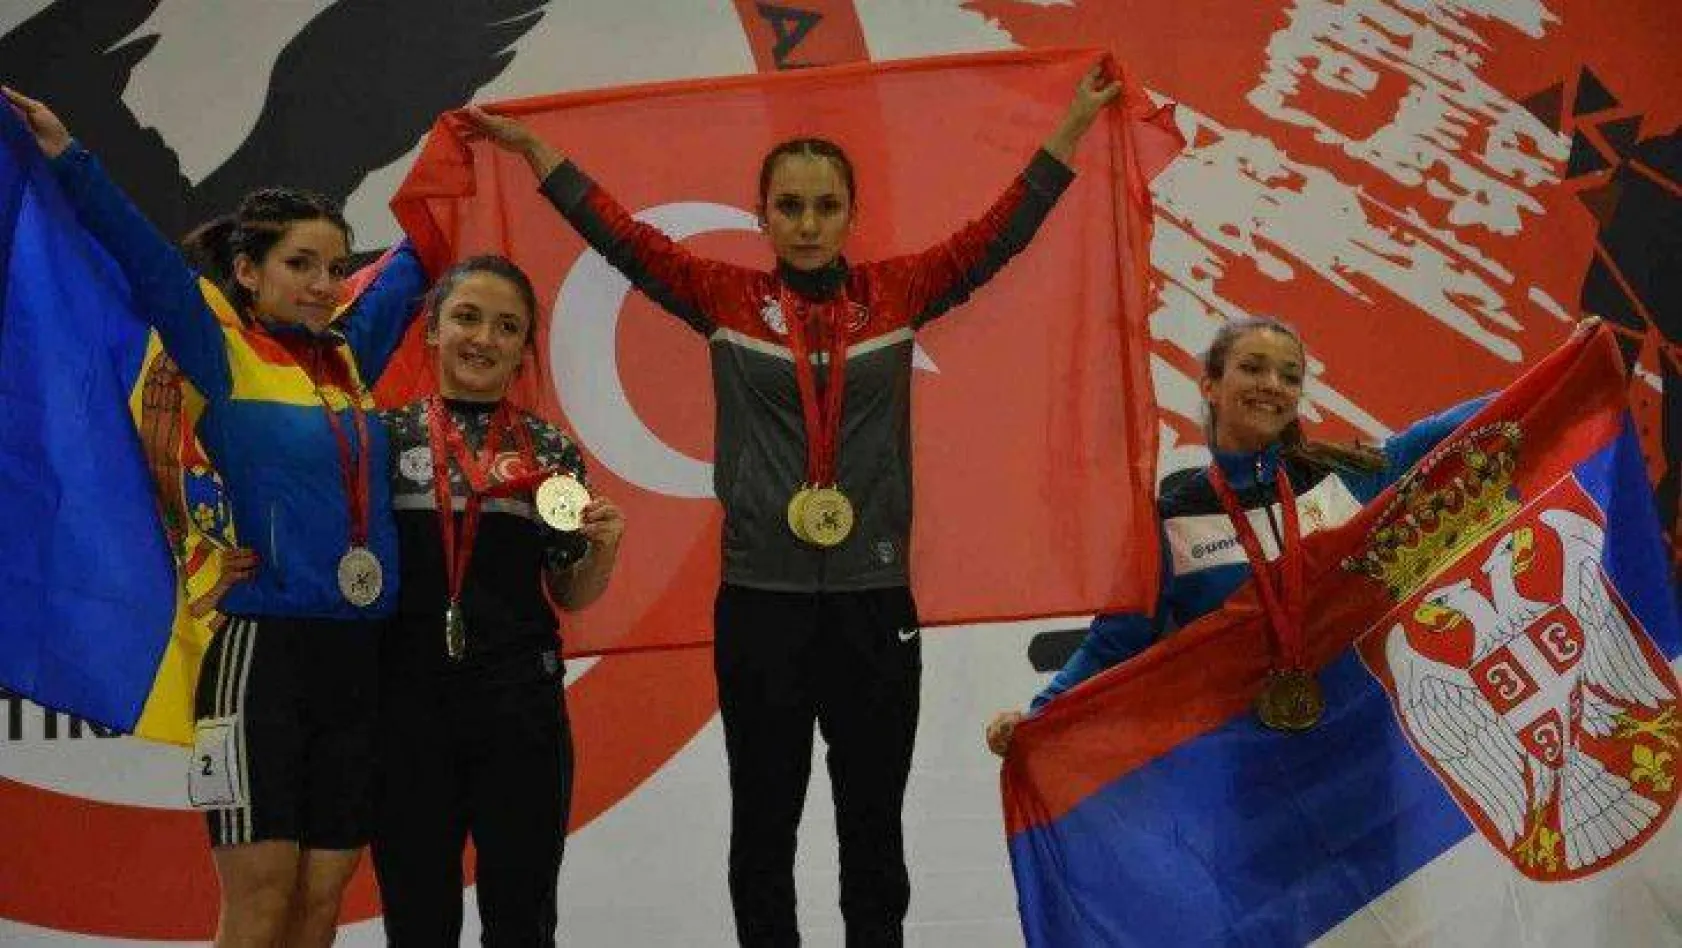 Avrupa Halter Şampiyonası'nda 3 altın, 2 gümüş madalya